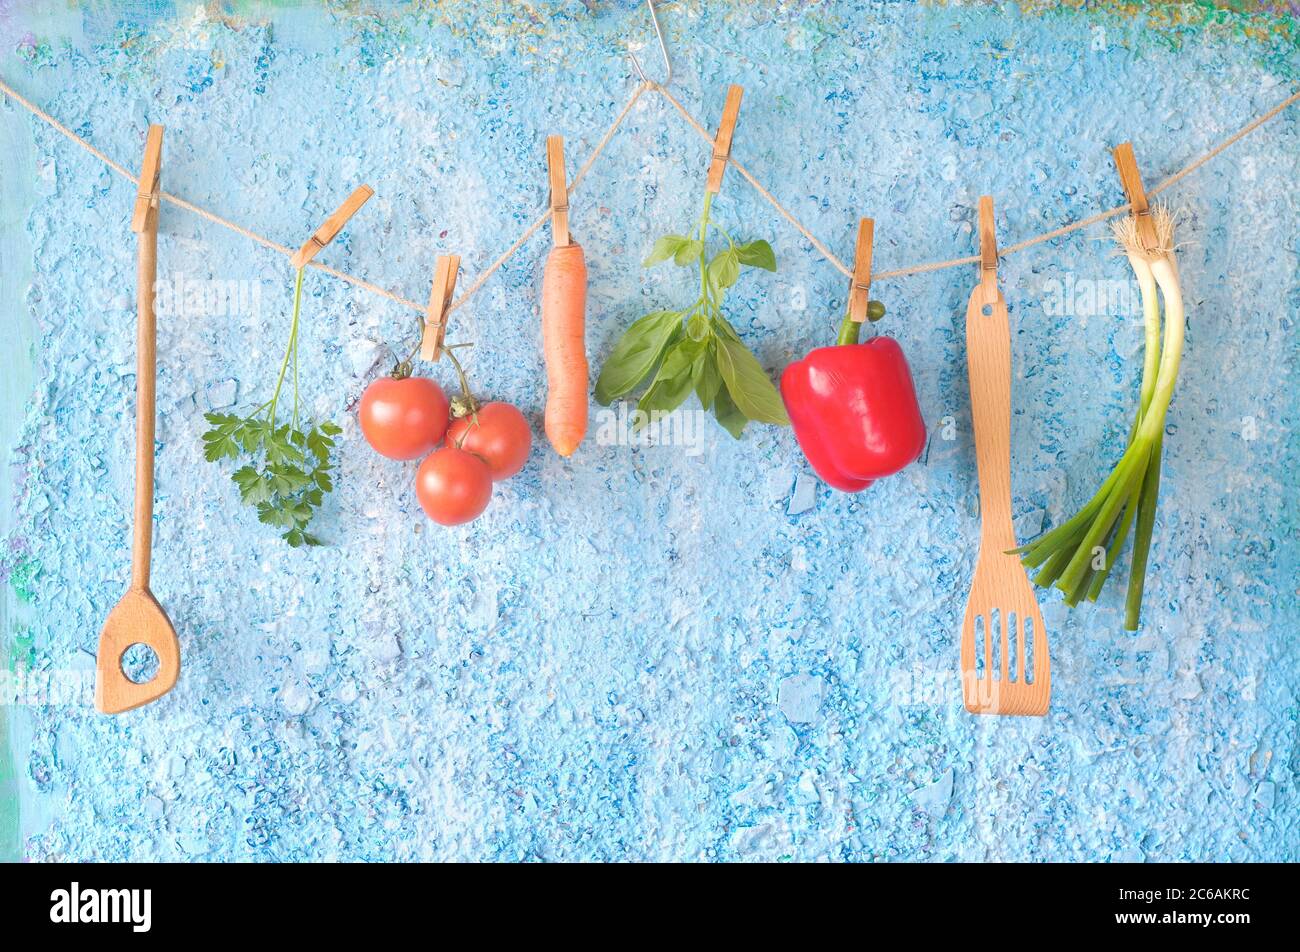 Verdure, utensili da cucina e erbe, cibo sano, dieta, cucina Foto Stock